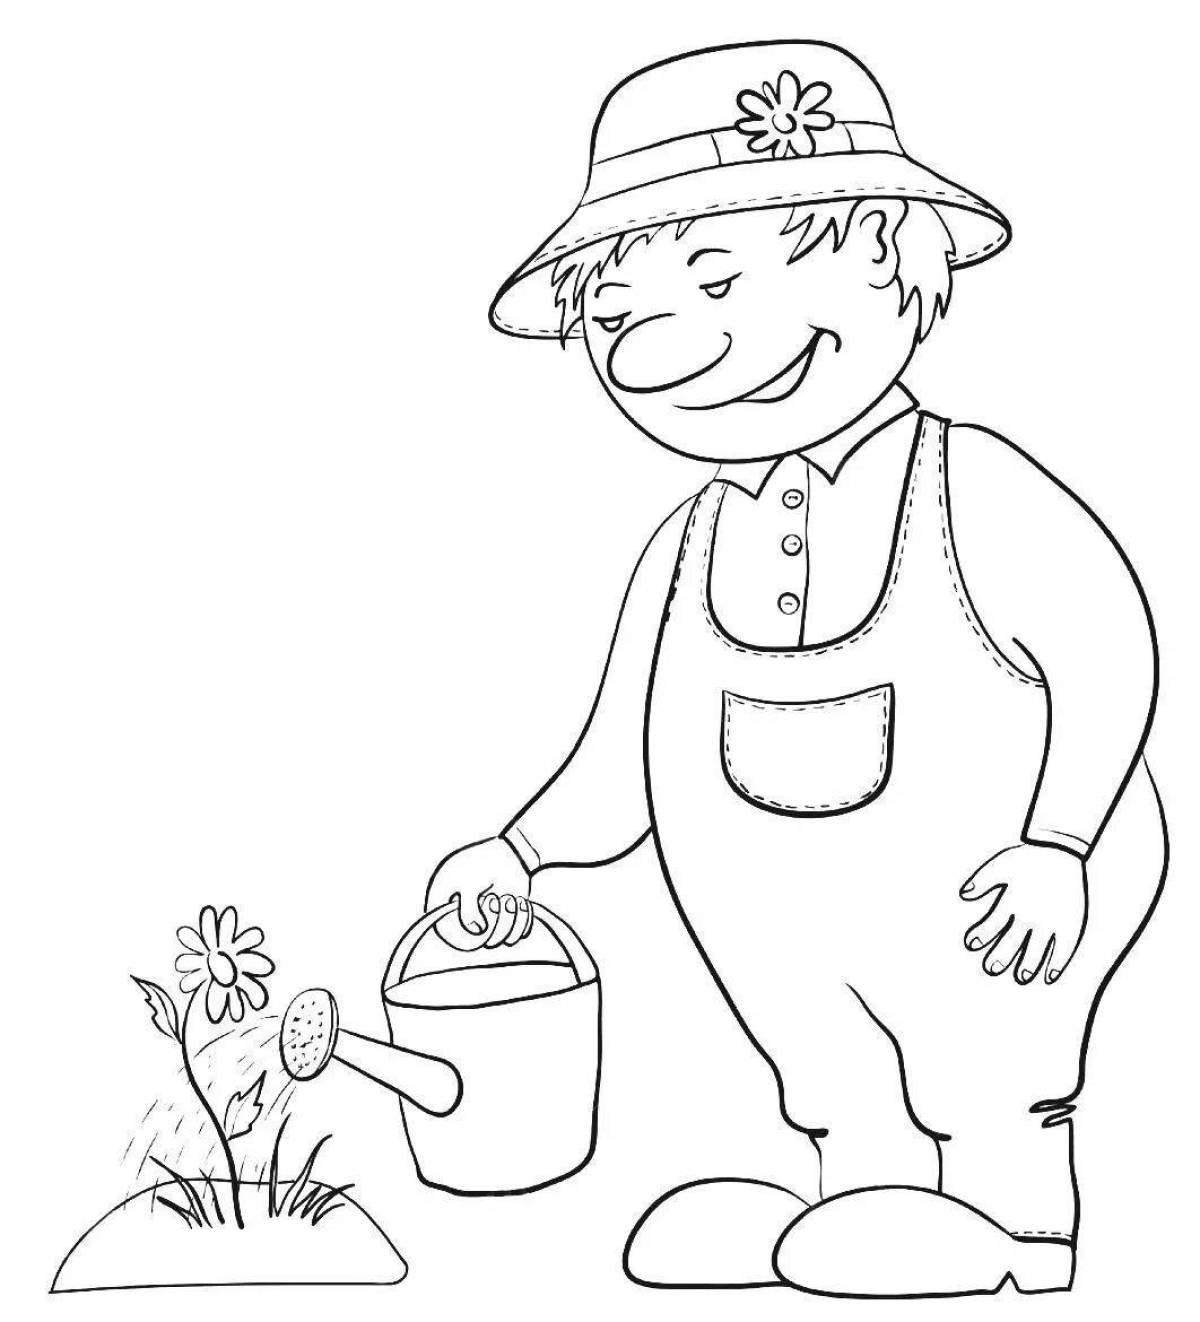 Fun gardening coloring book for kids